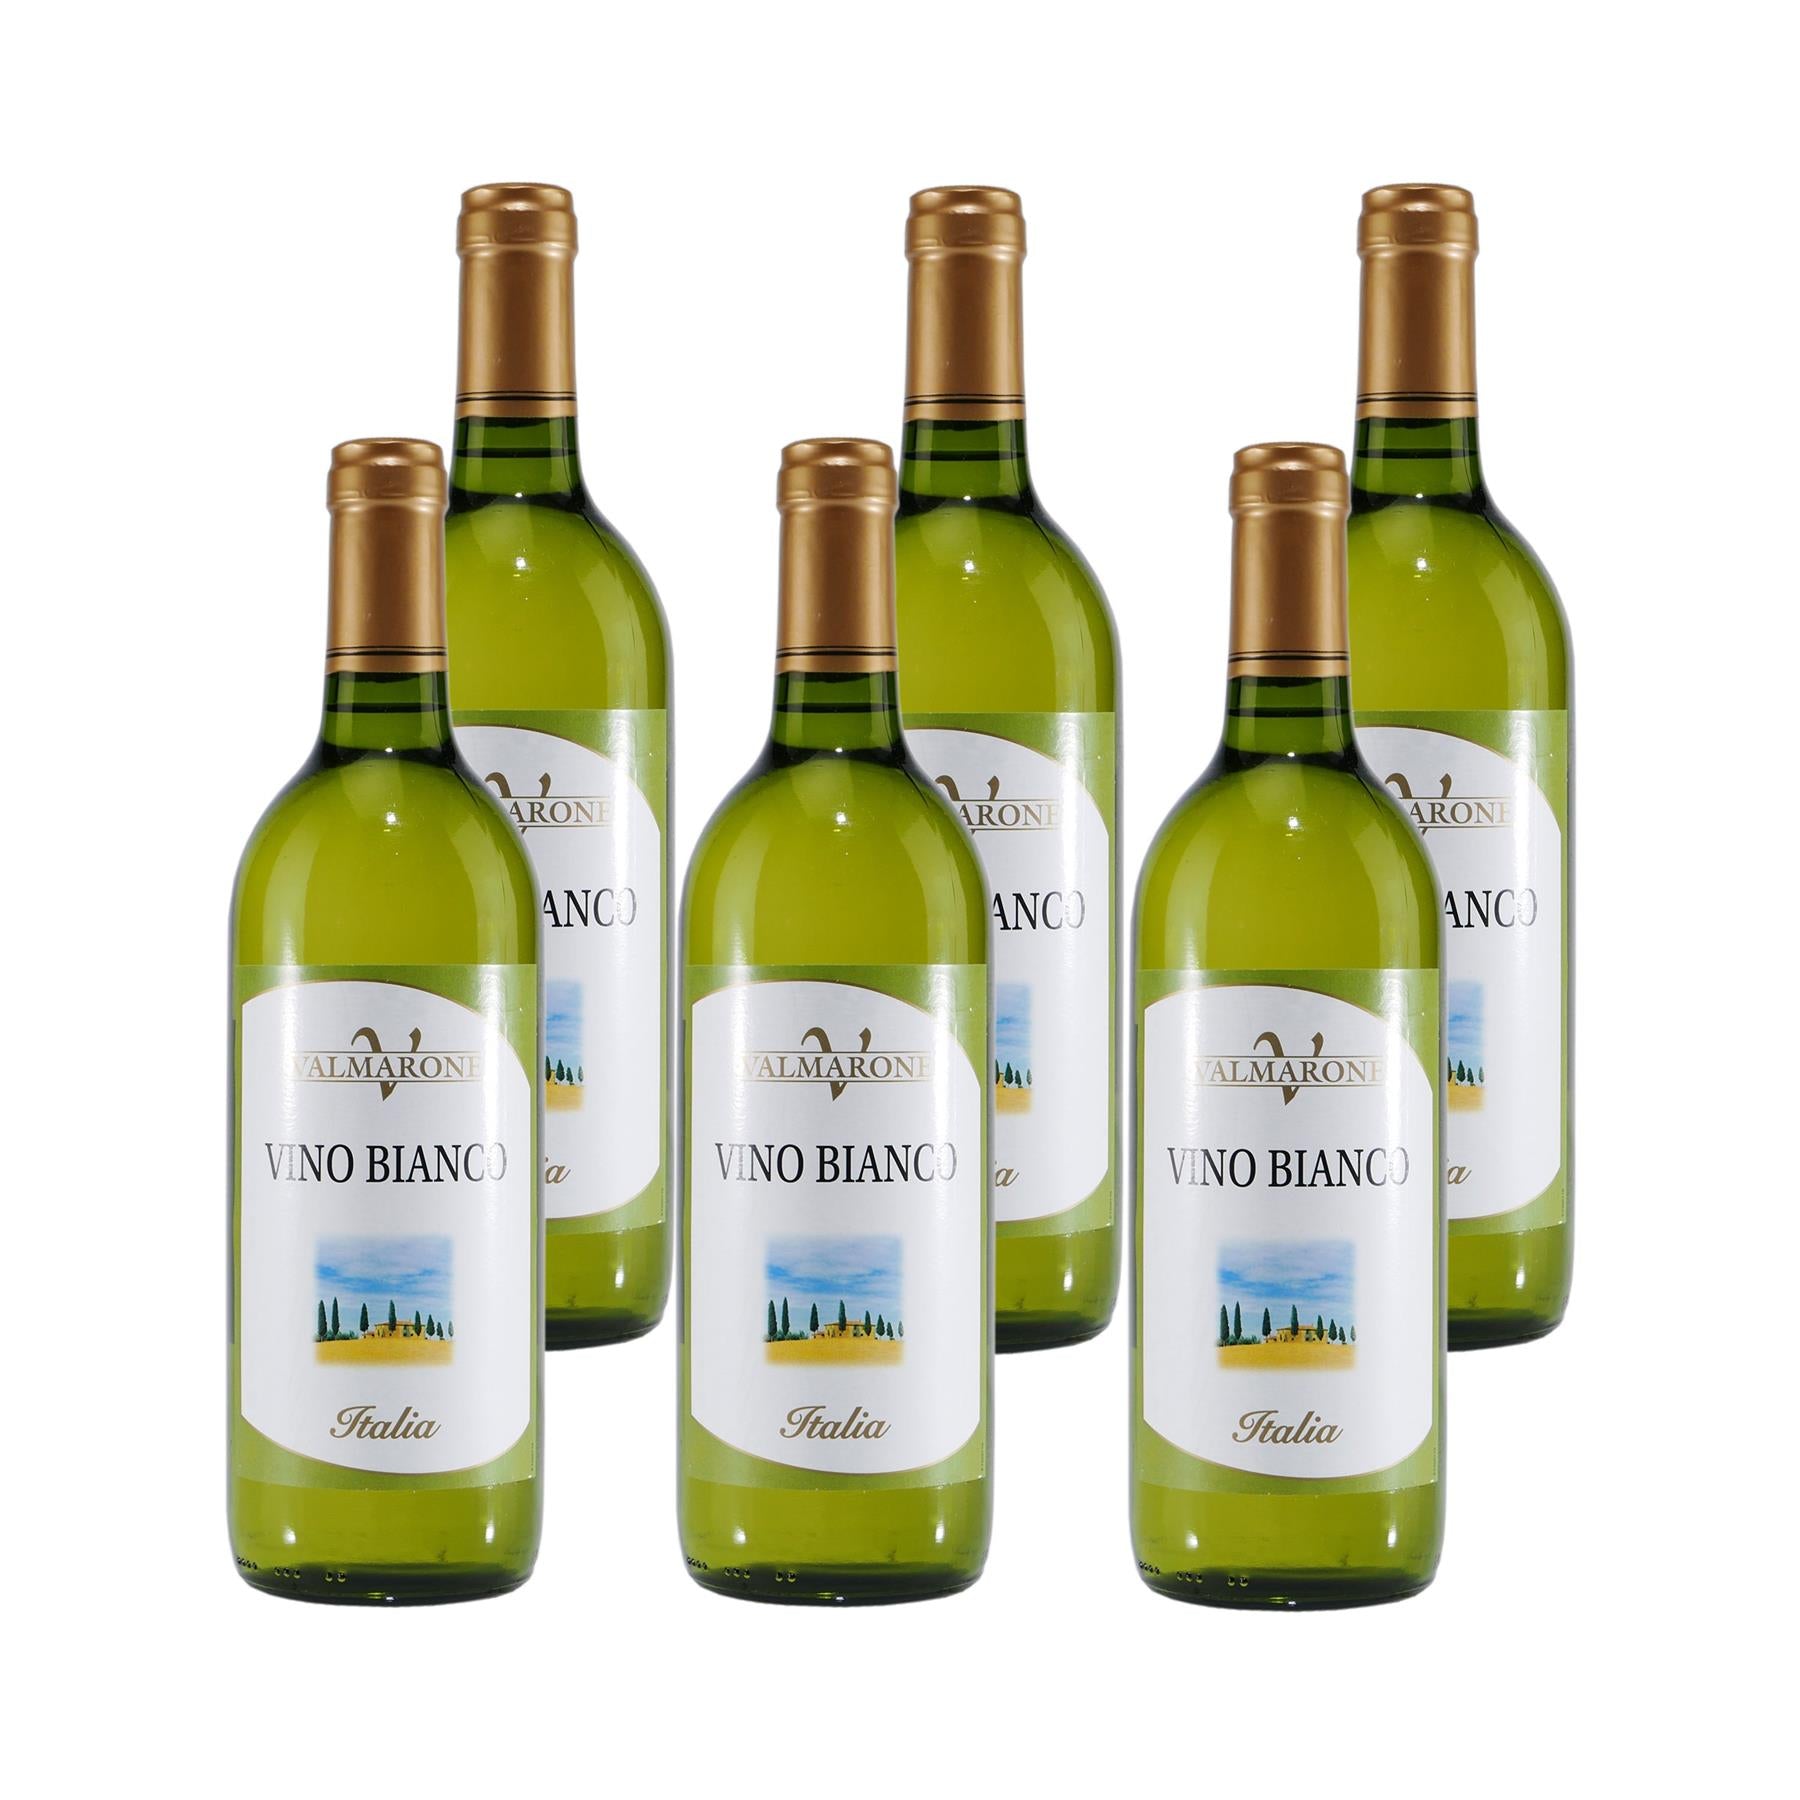 Valmarone Vino Bianco Weißwein trocken (6x0,75L)